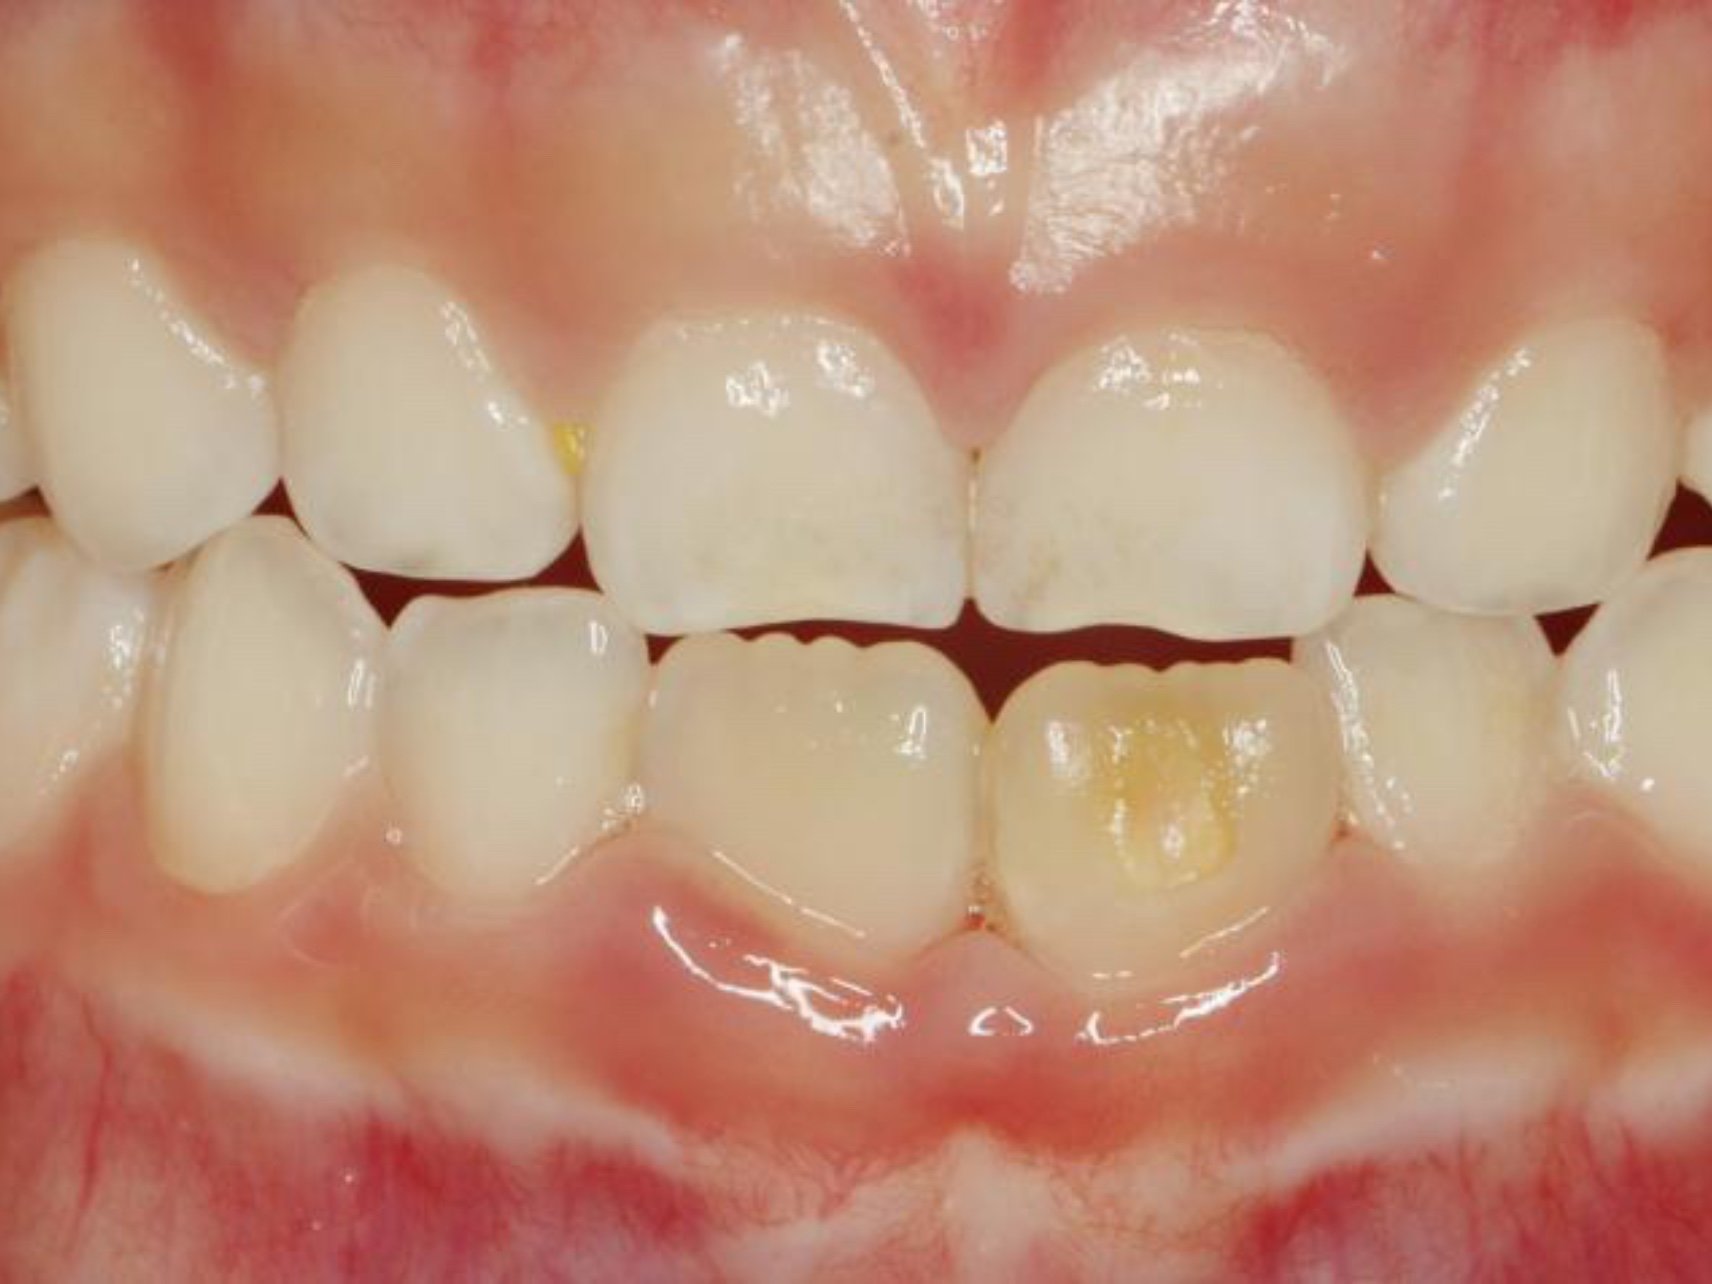 常规复查,妈妈主诉新长的恒牙黄黄的,经医生检查发现是牙釉质发育不全